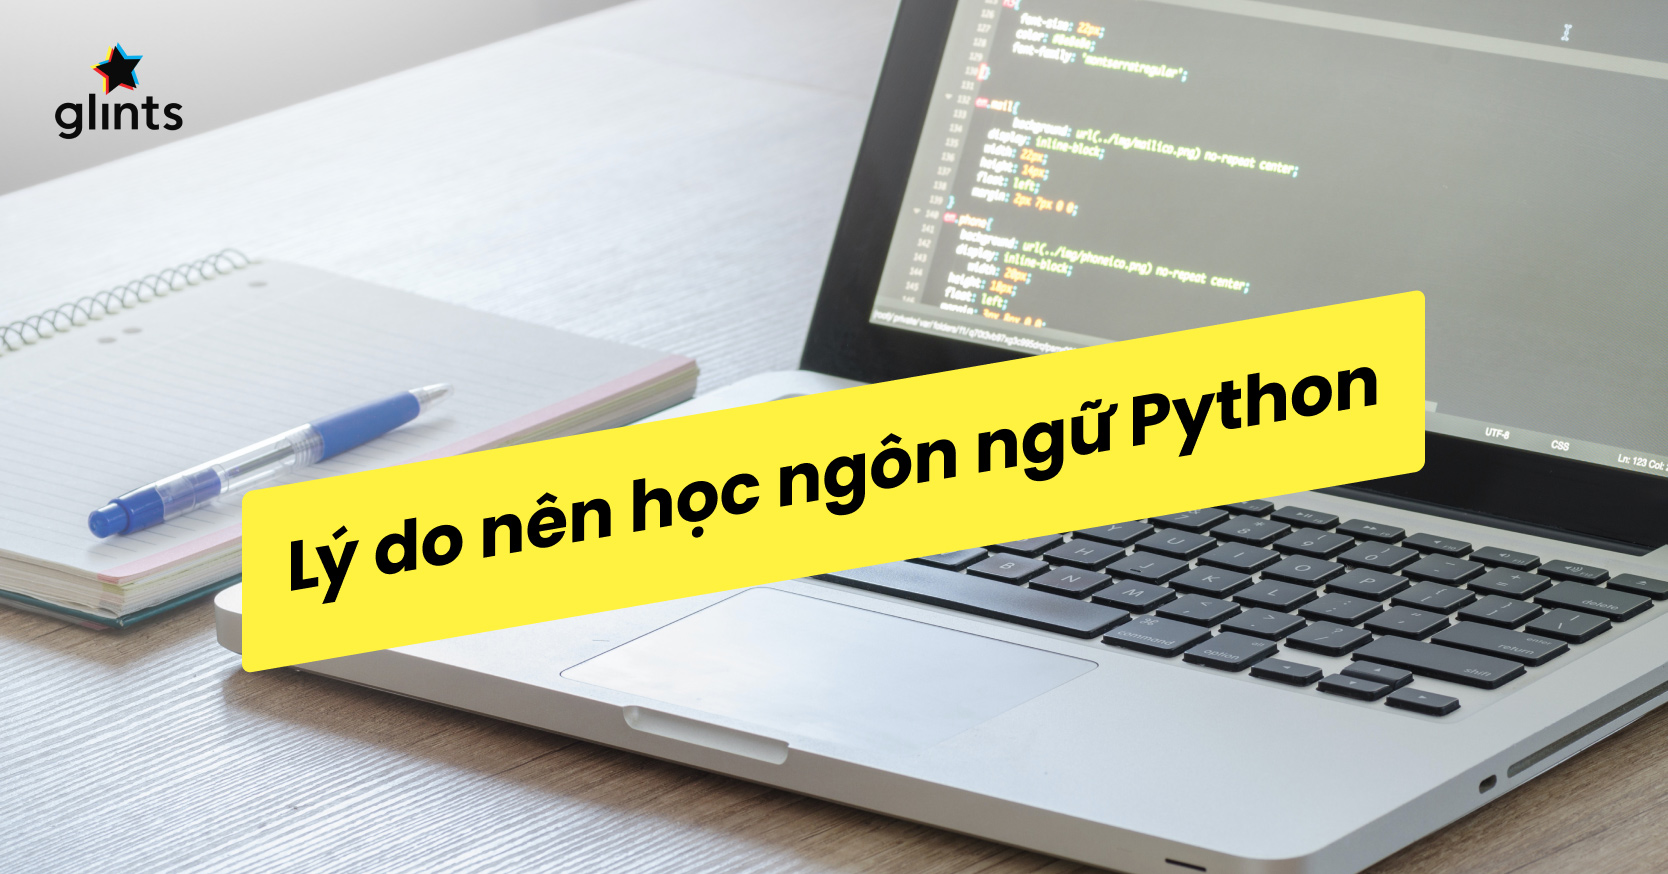 Python làm gì; lý do nên học Python: Tại sao nên học Python? Đó là câu hỏi mà nhiều người muốn tìm câu trả lời. Xem ngay hội thảo này để tìm hiểu về các ứng dụng của Python và lý do vì sao nó được coi là một trong những ngôn ngữ lập trình quan trọng nhất hiện nay.